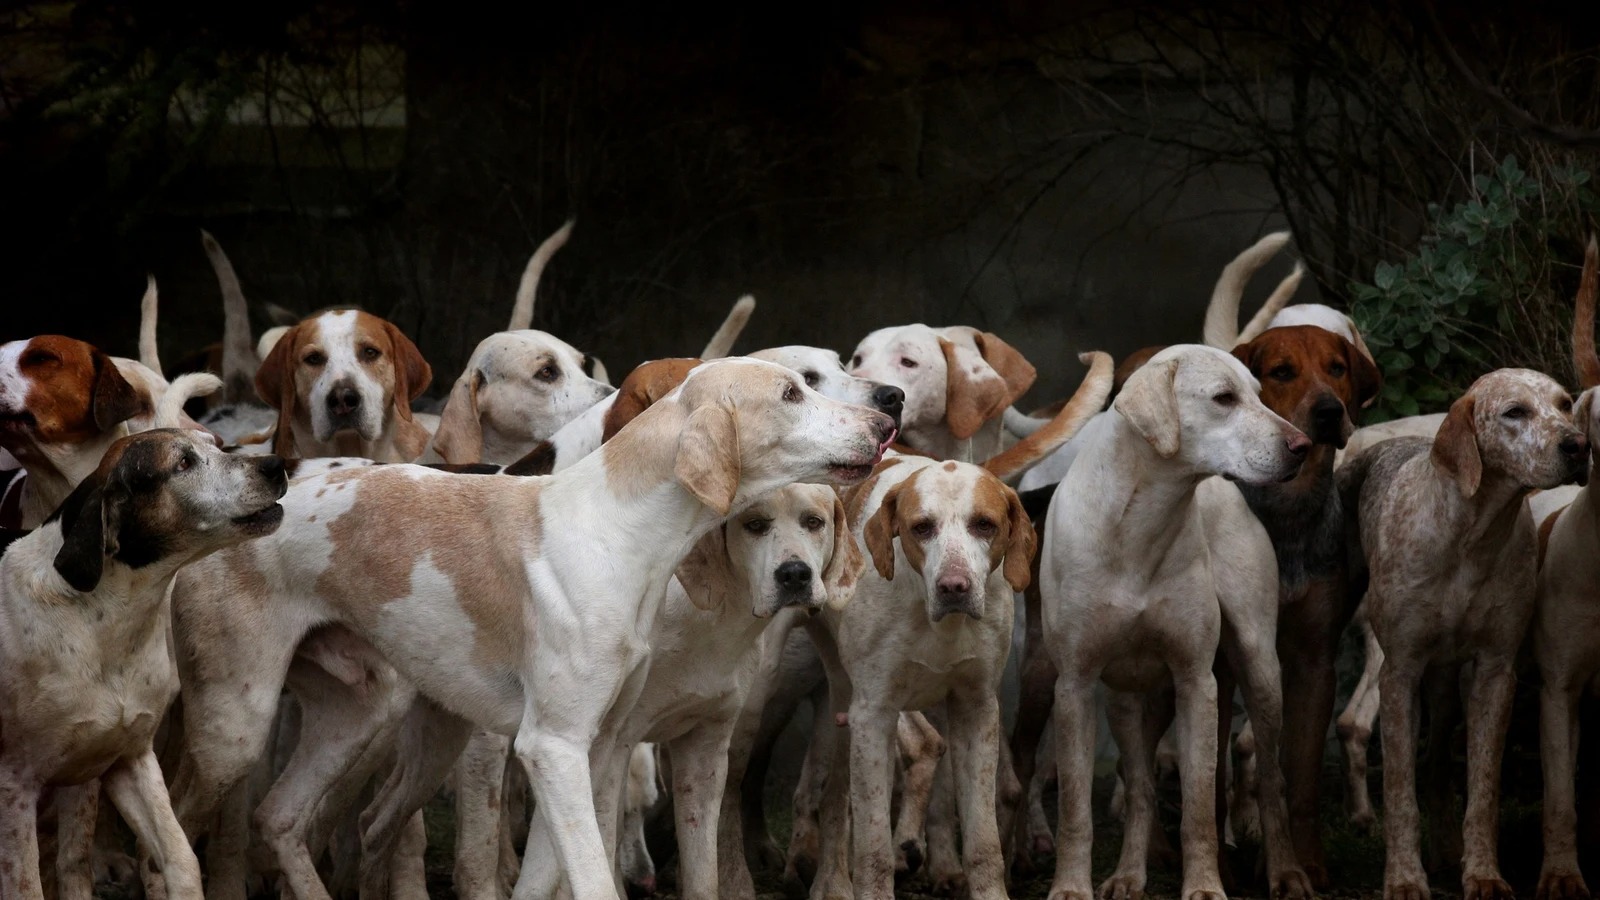 Que se haga justicia, un zoólogo se declaró culpable de violar, torturar y matar a decenas de perros